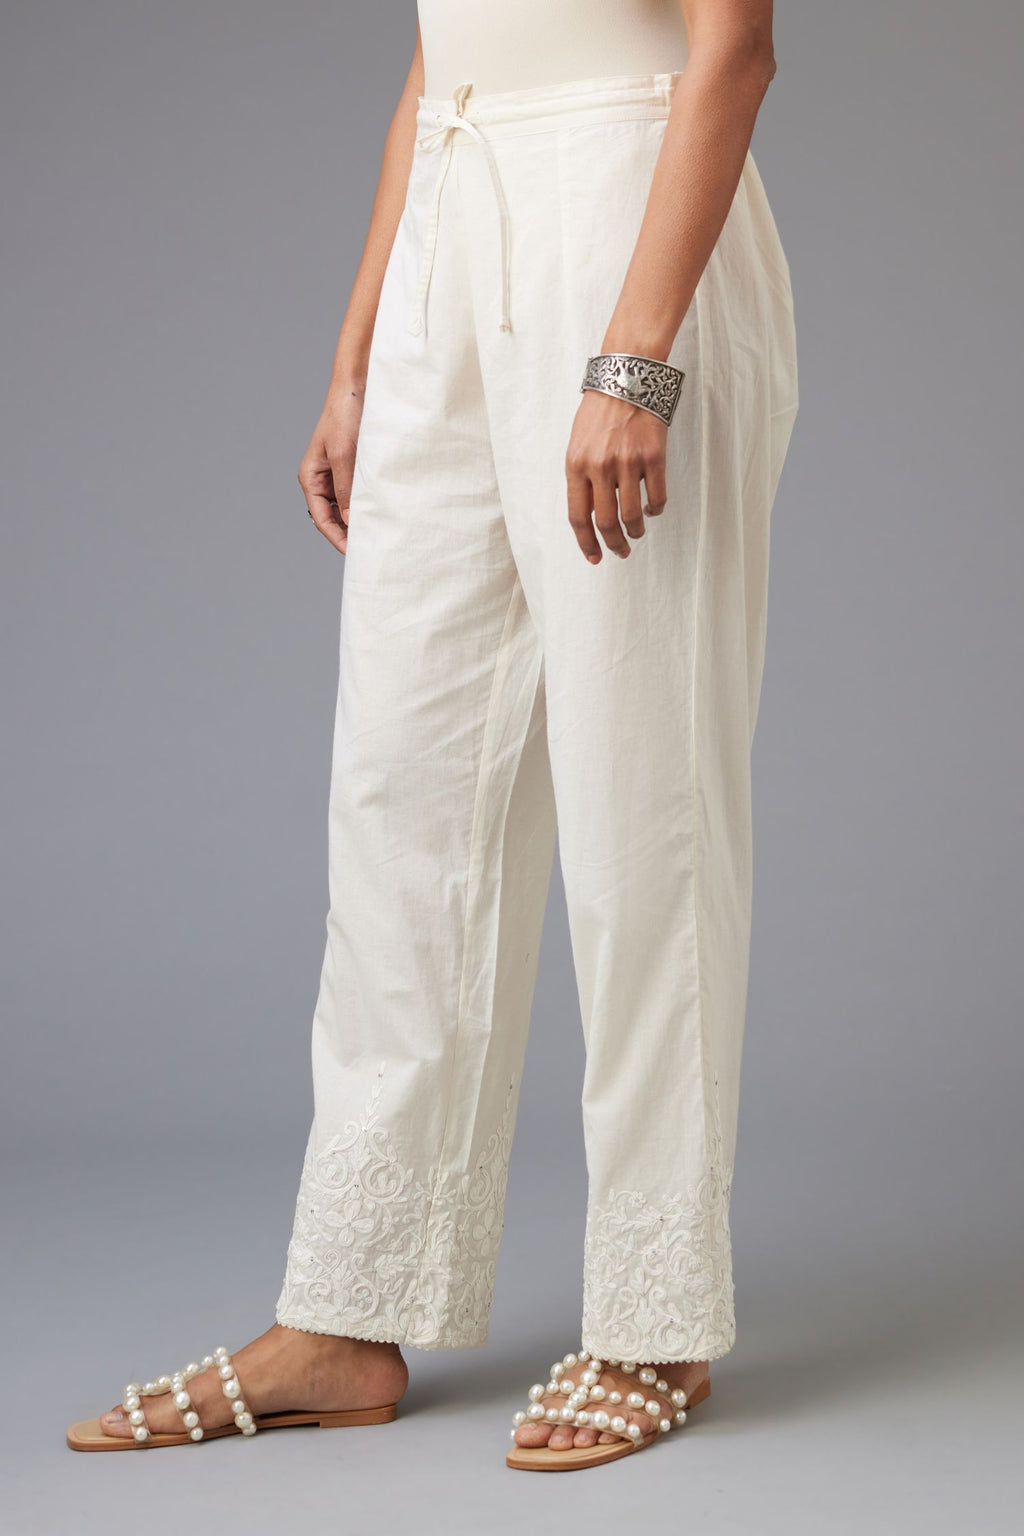 Buy Beige Pants for Women by Indie Picks Online | Ajio.com